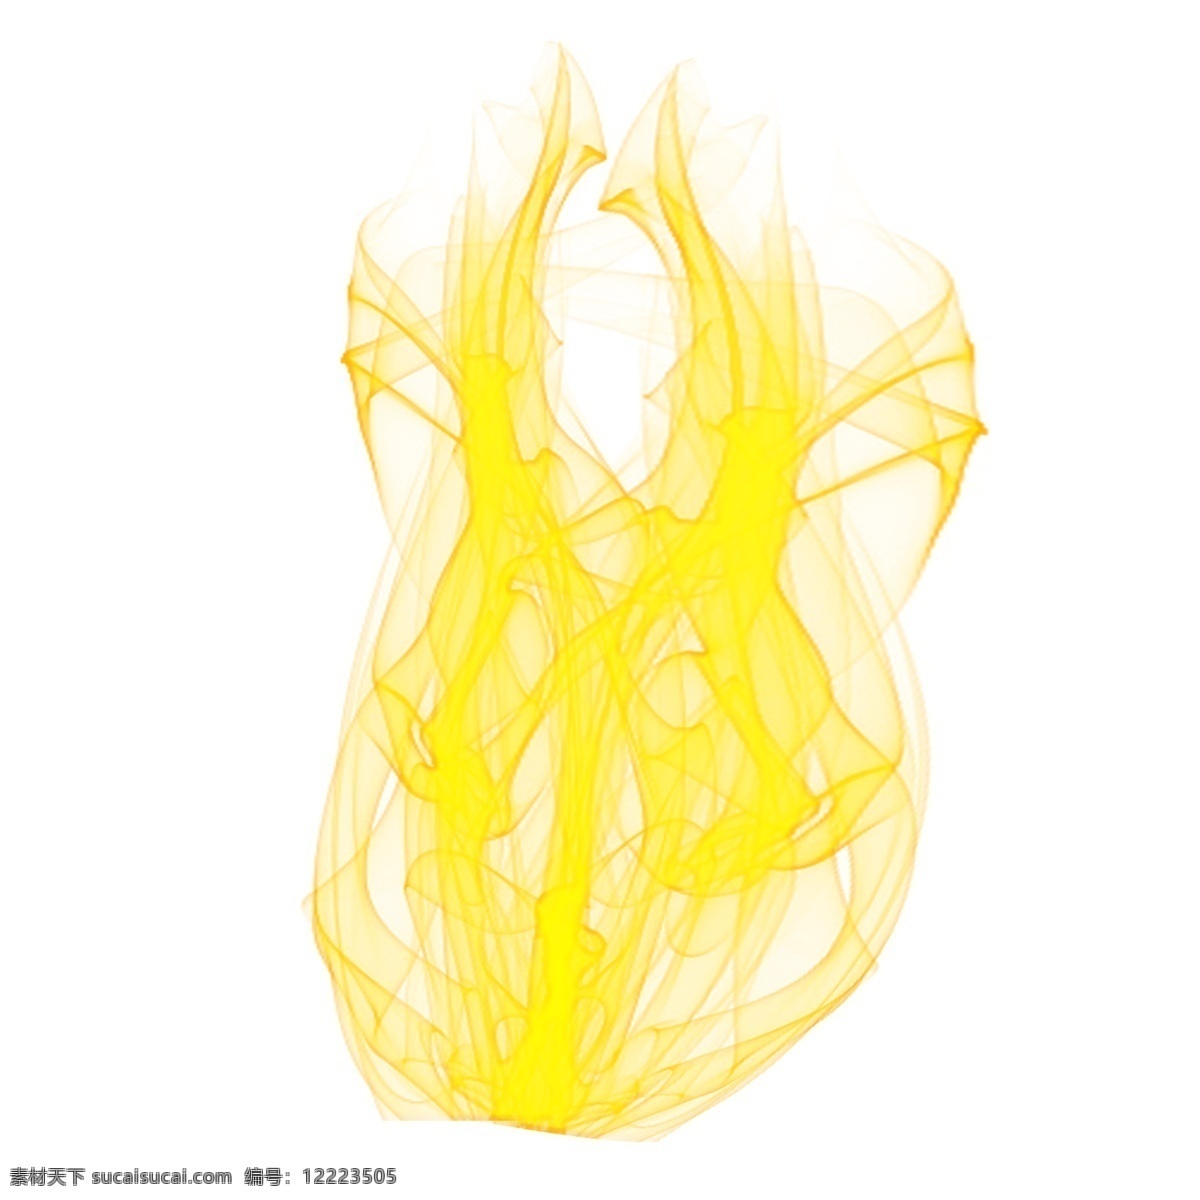 黄色 燃烧 火苗 元素 火焰 火 炫酷 烈火 火焰矢量 跳动的火焰 艺术火焰 黄色火焰